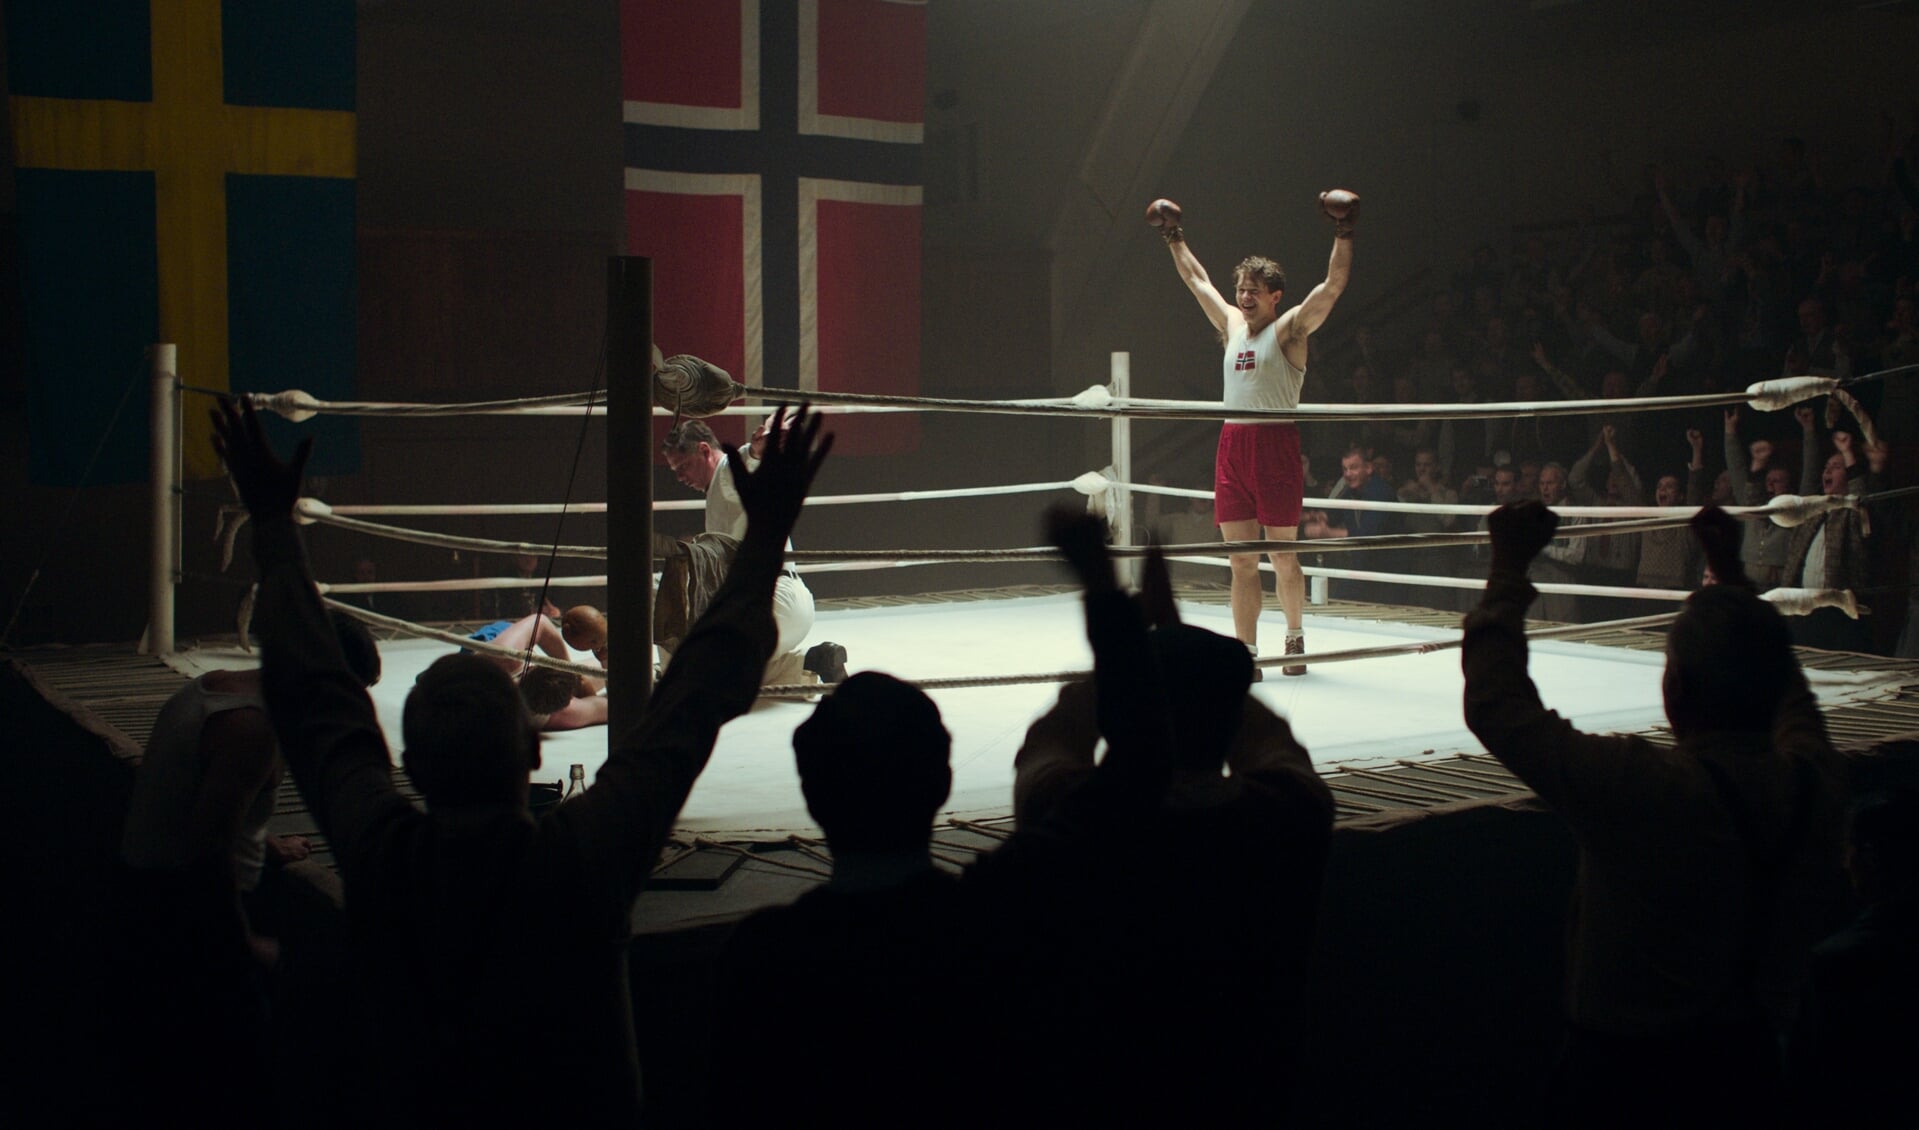 Uit de film Betrayed (Den største forbrytelsen) van Eirik Svensson uit Noorwegen. Deze wordt op vrijdagavond 12 november vertoond in De Lawei in Drachten.